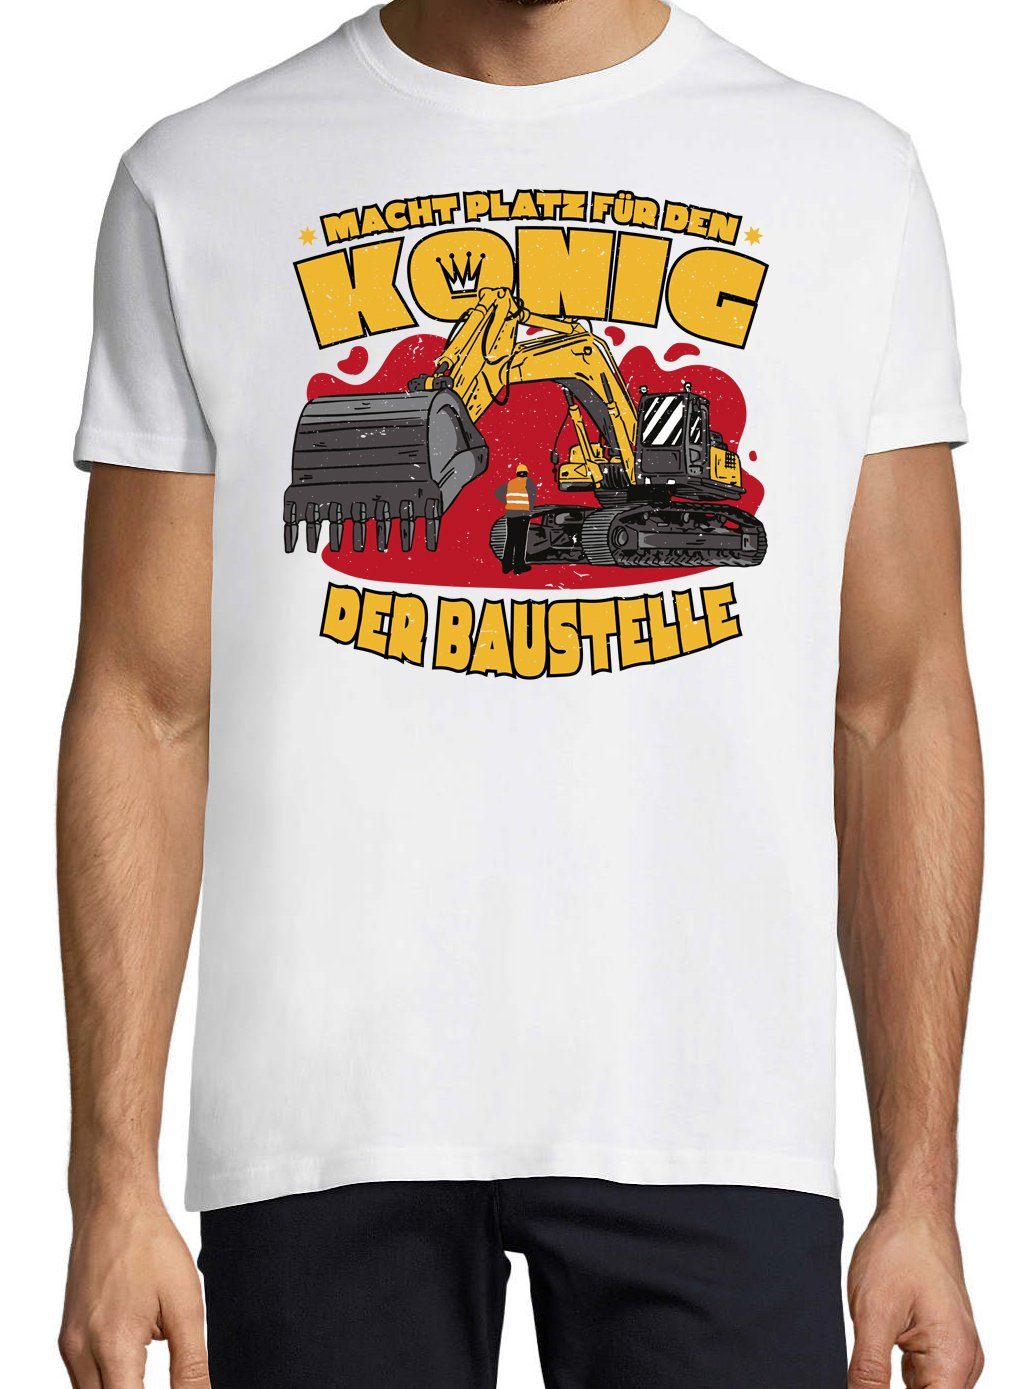 Weiß Youth T-Shirt König Herren Designz Traktor Der Baustelle Frontprint lustigem Shirt mit